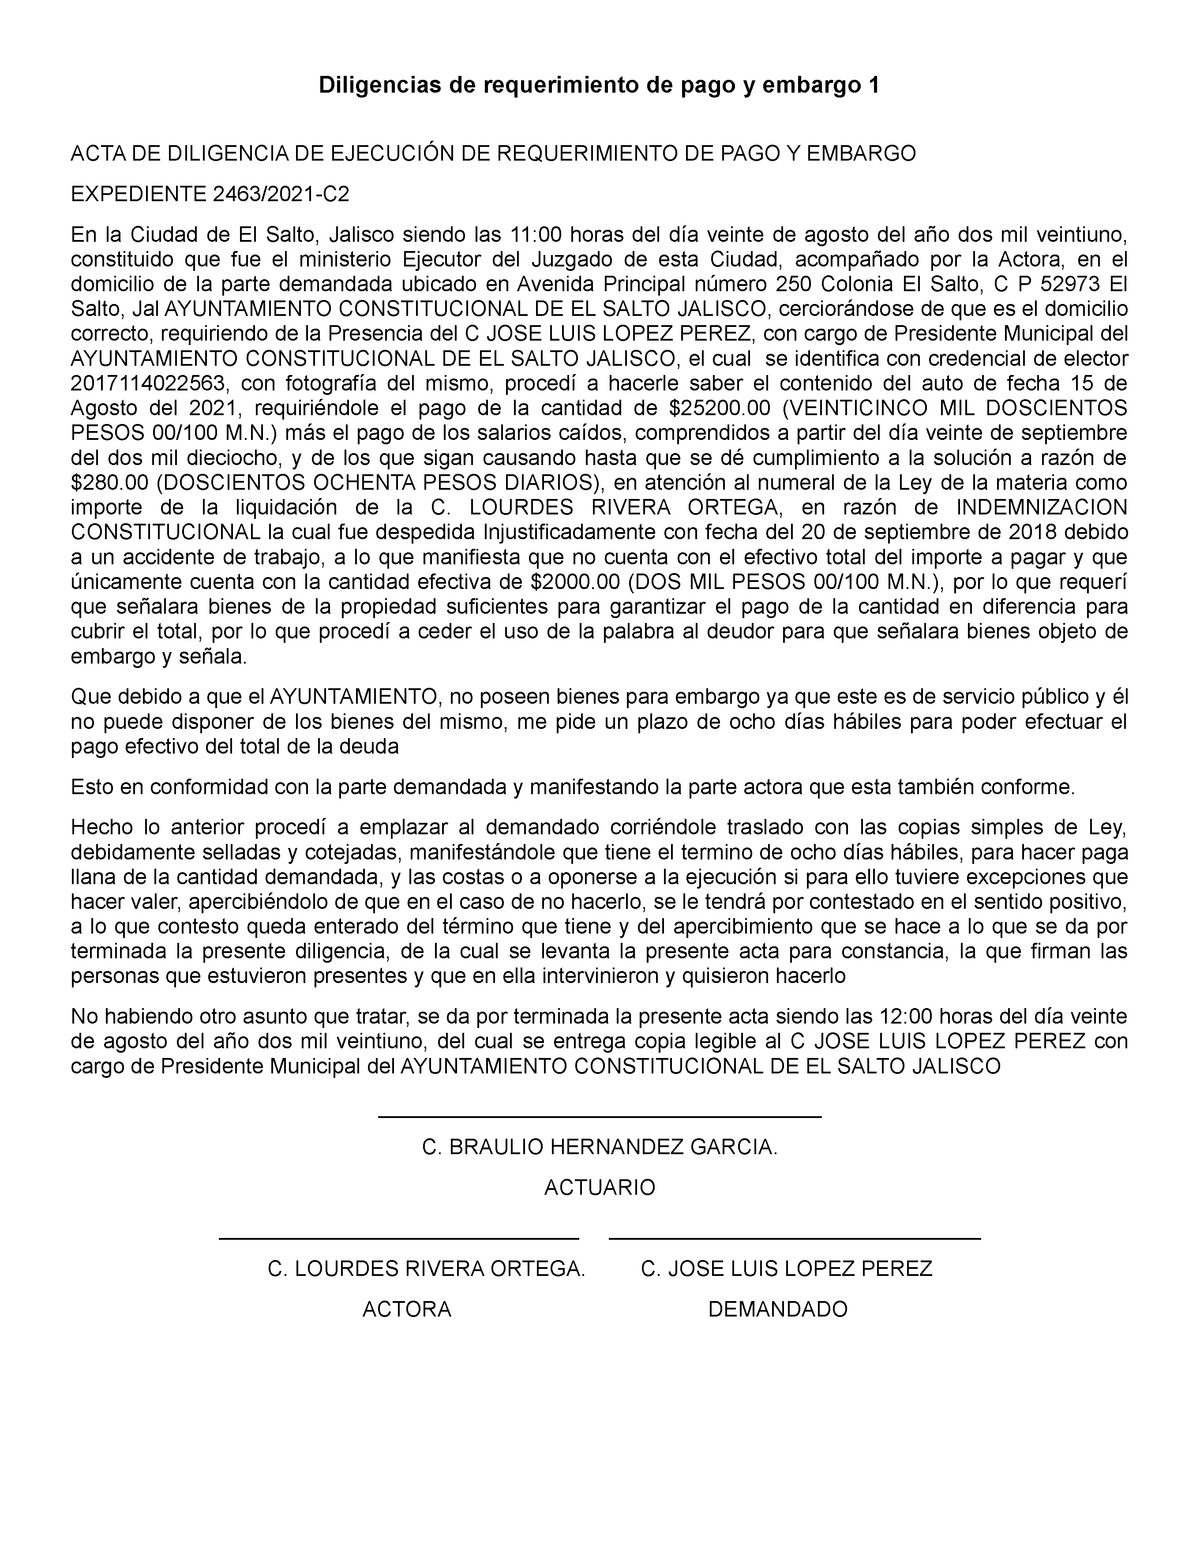 Carta Notarial De Requerimiento De Pago Y Otros Sres Linares Tiempo